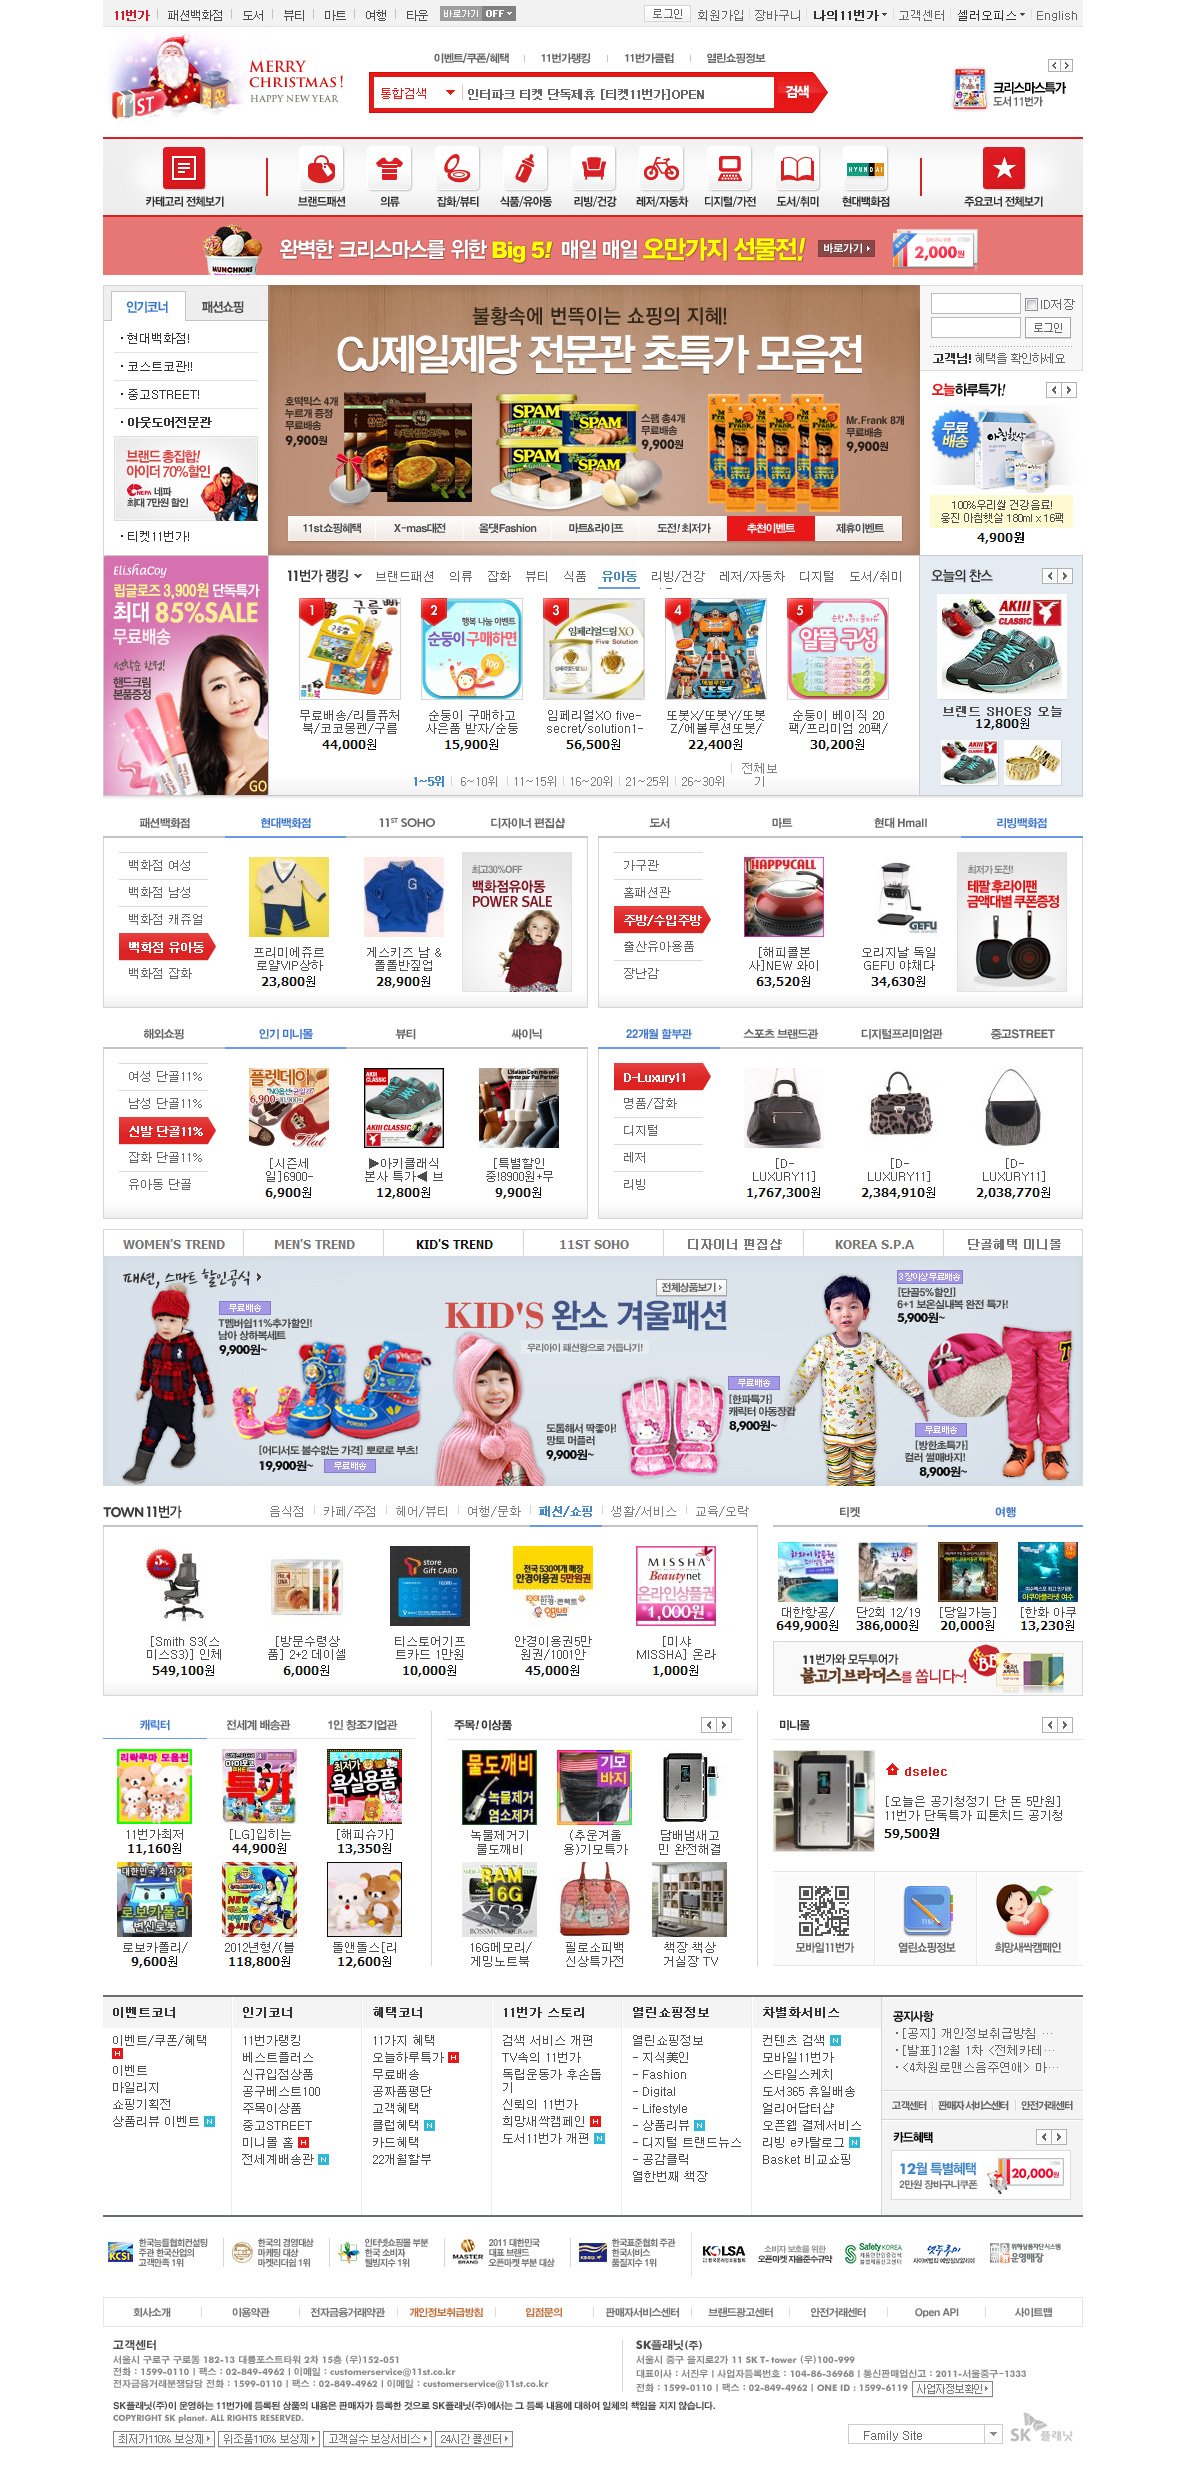 11ST，11大道韩国SK集团旗下购物网站。